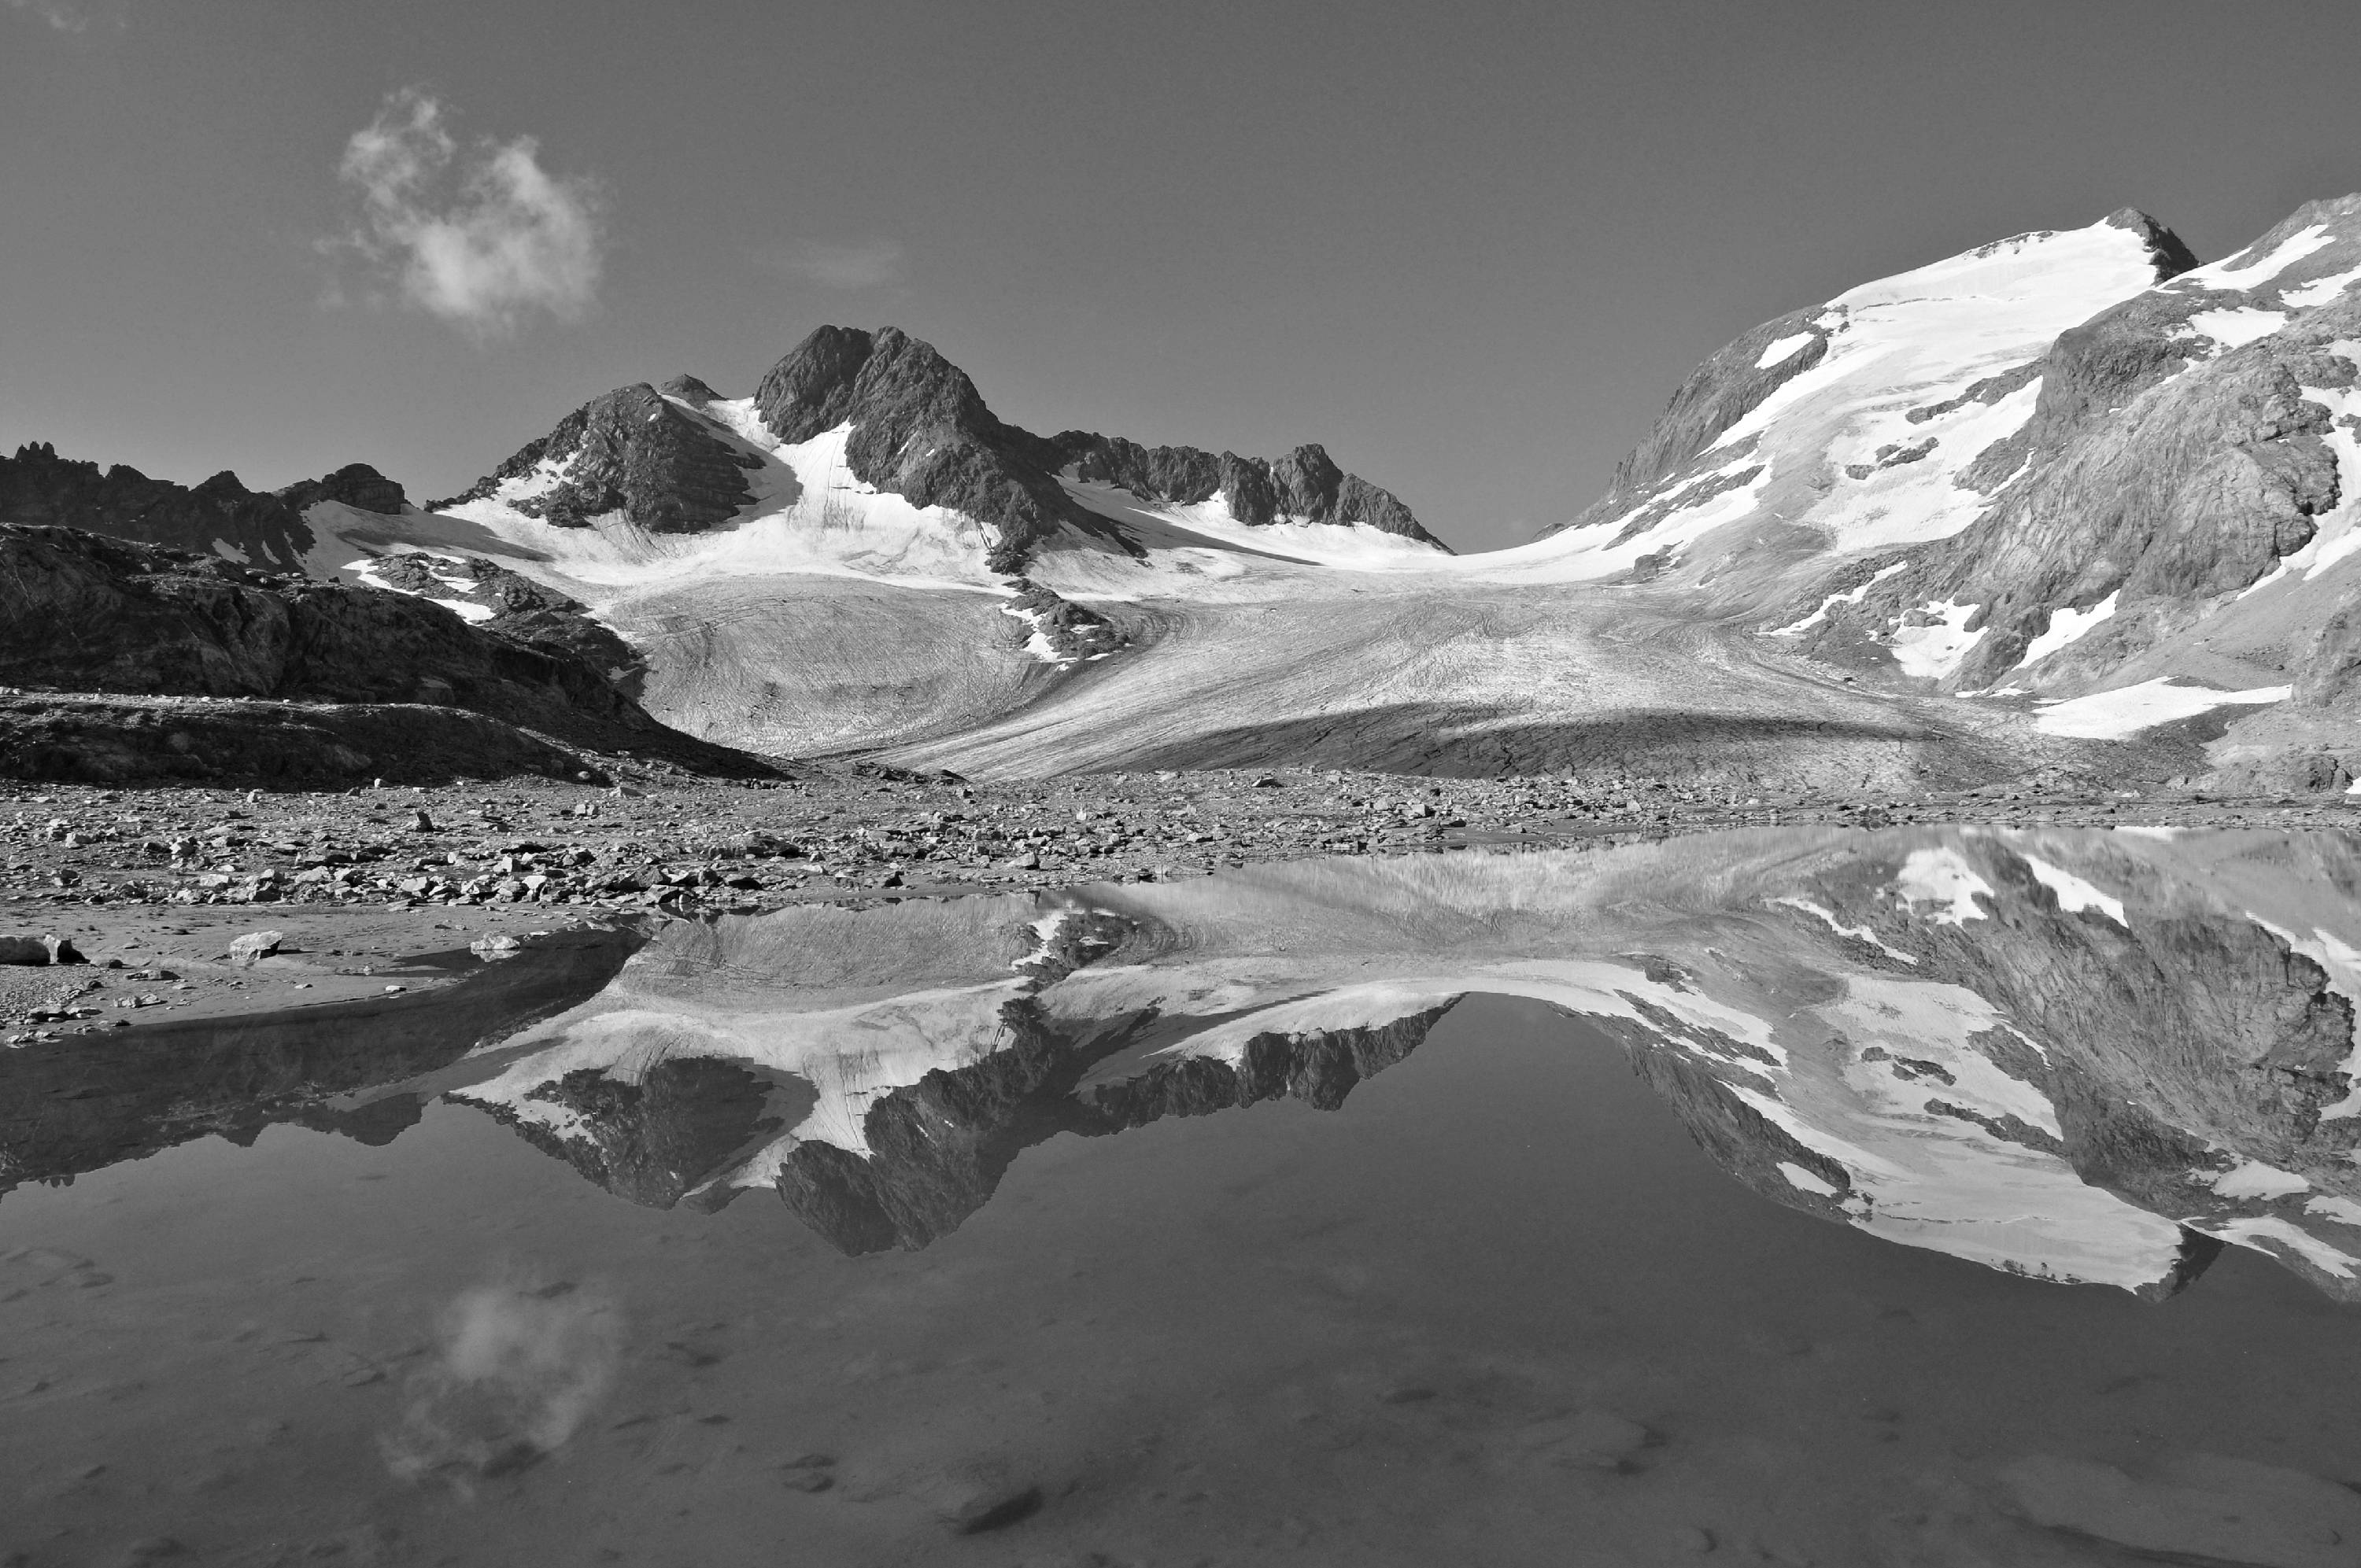 MTNB29-Reflet-Cime-du-Grand-&-Petit-Sauvage-Glacier-de-Saint-Sorlin-Pic-de-L-Etendard-de-Claude-Garnier.JPG